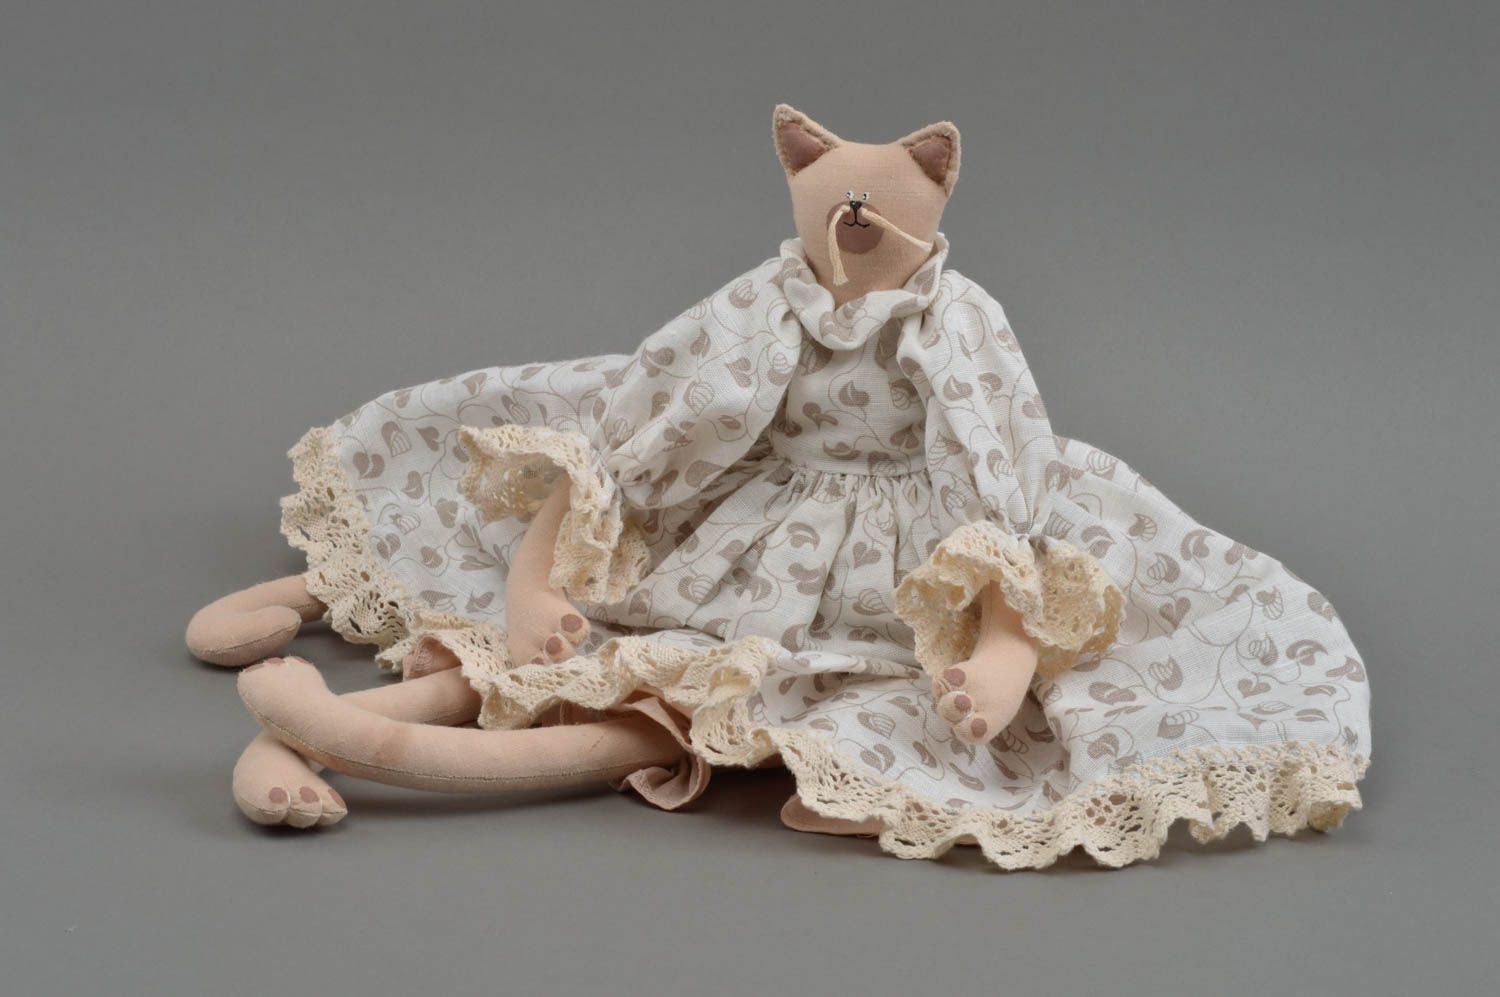 Textil Kuscheltier Katze weiß im hellen Kleid hoch schön handmade für Dekor foto 3